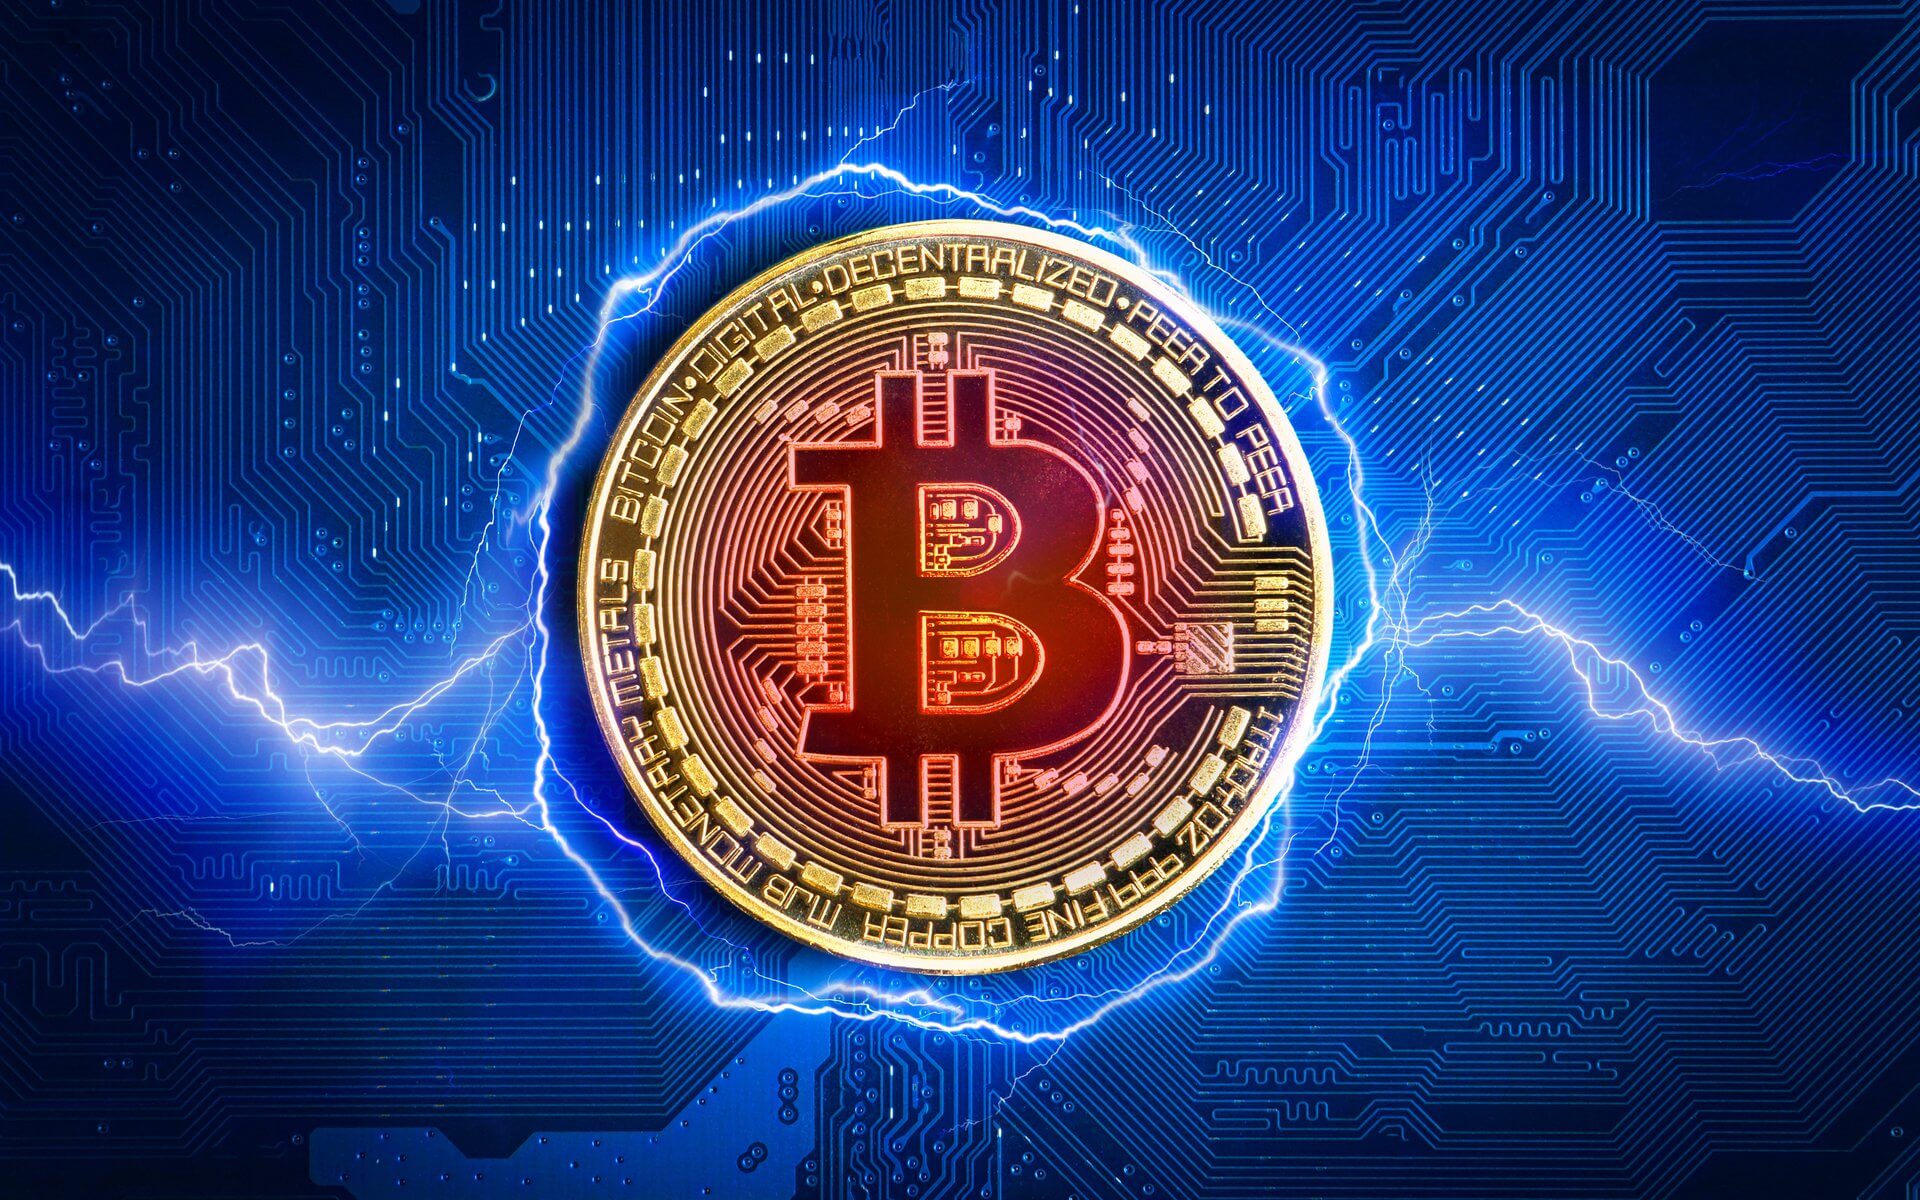 Bitcoin blockchain blockchain revolution promising bitcoins 2021 dodge